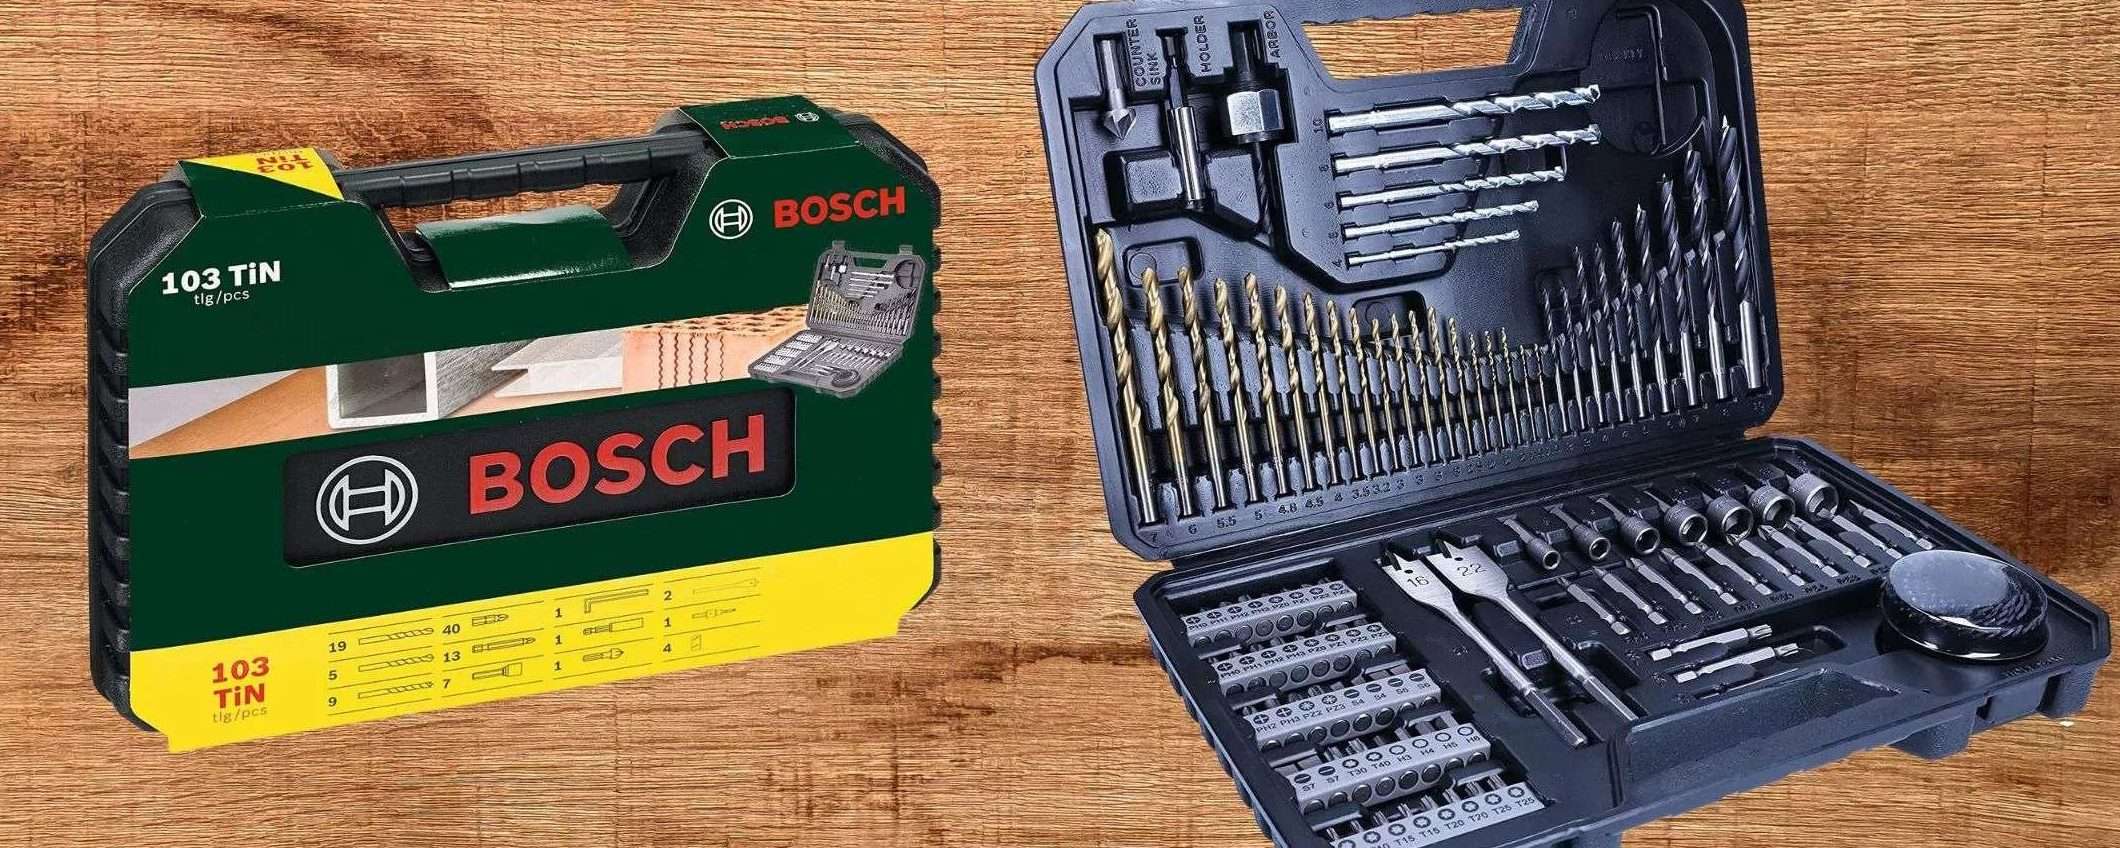 Bosch: GIGANTESCO kit 103 in 1 di qualità a prezzo ridicolo su Amazon (24€)